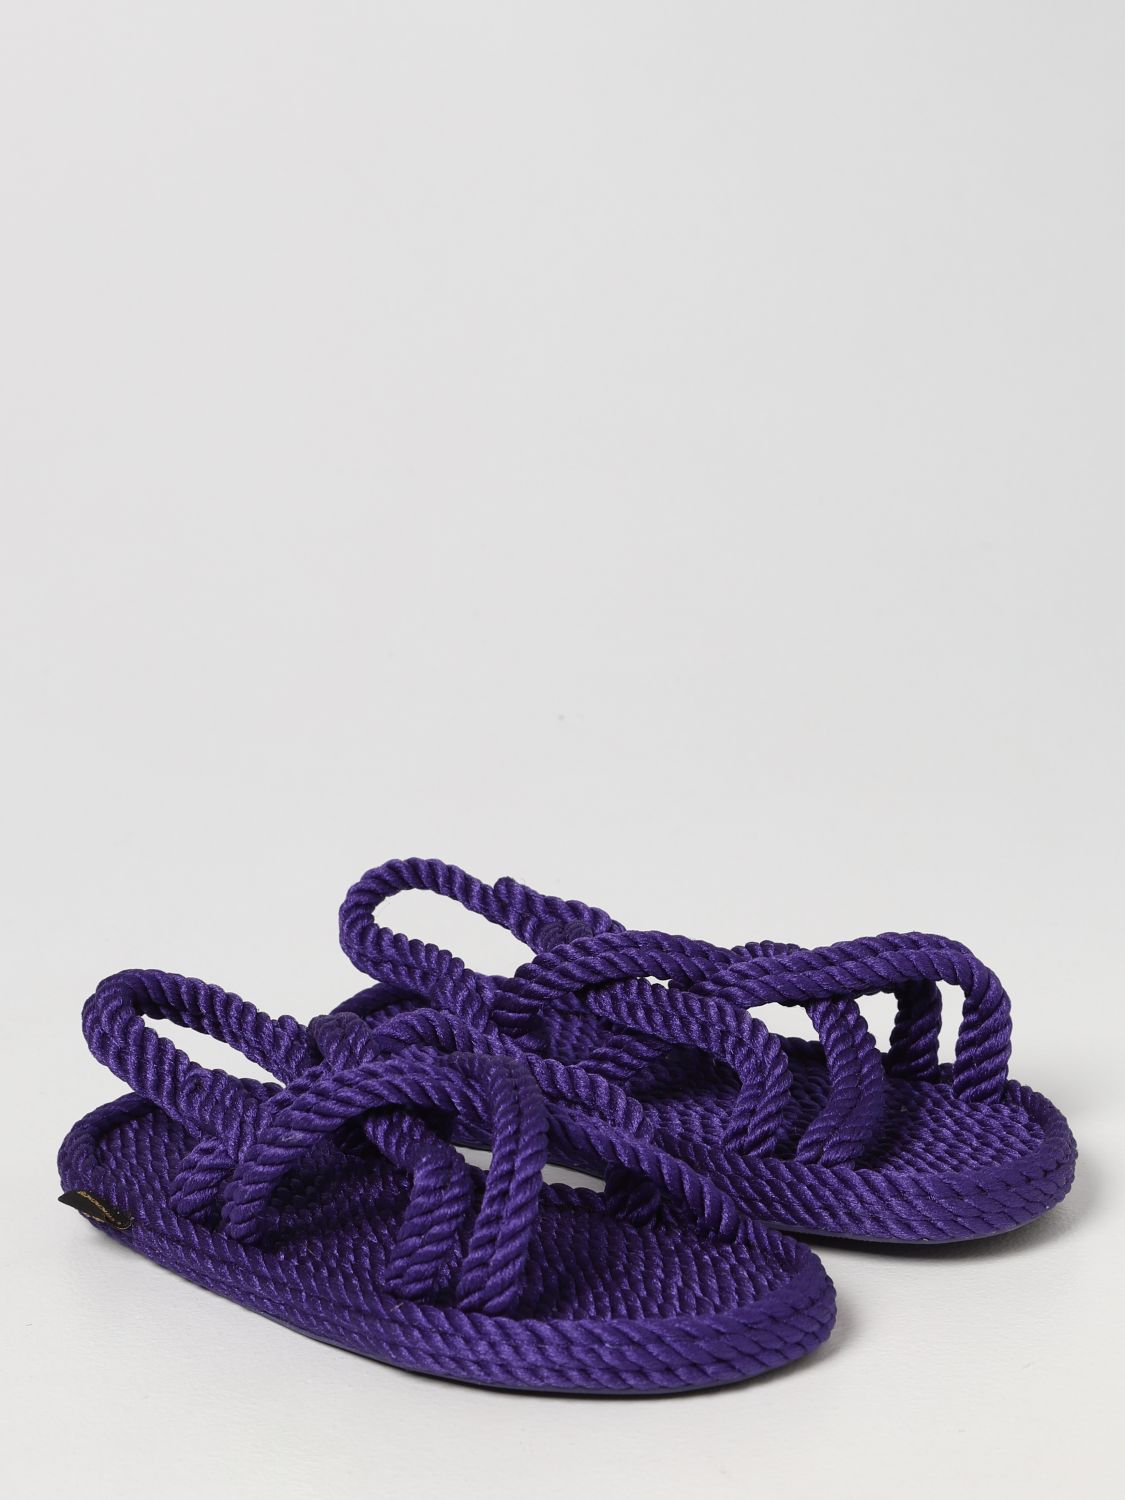 Flache Sandalen Bohonomad: Schuhe damen Bohonomad violett 2